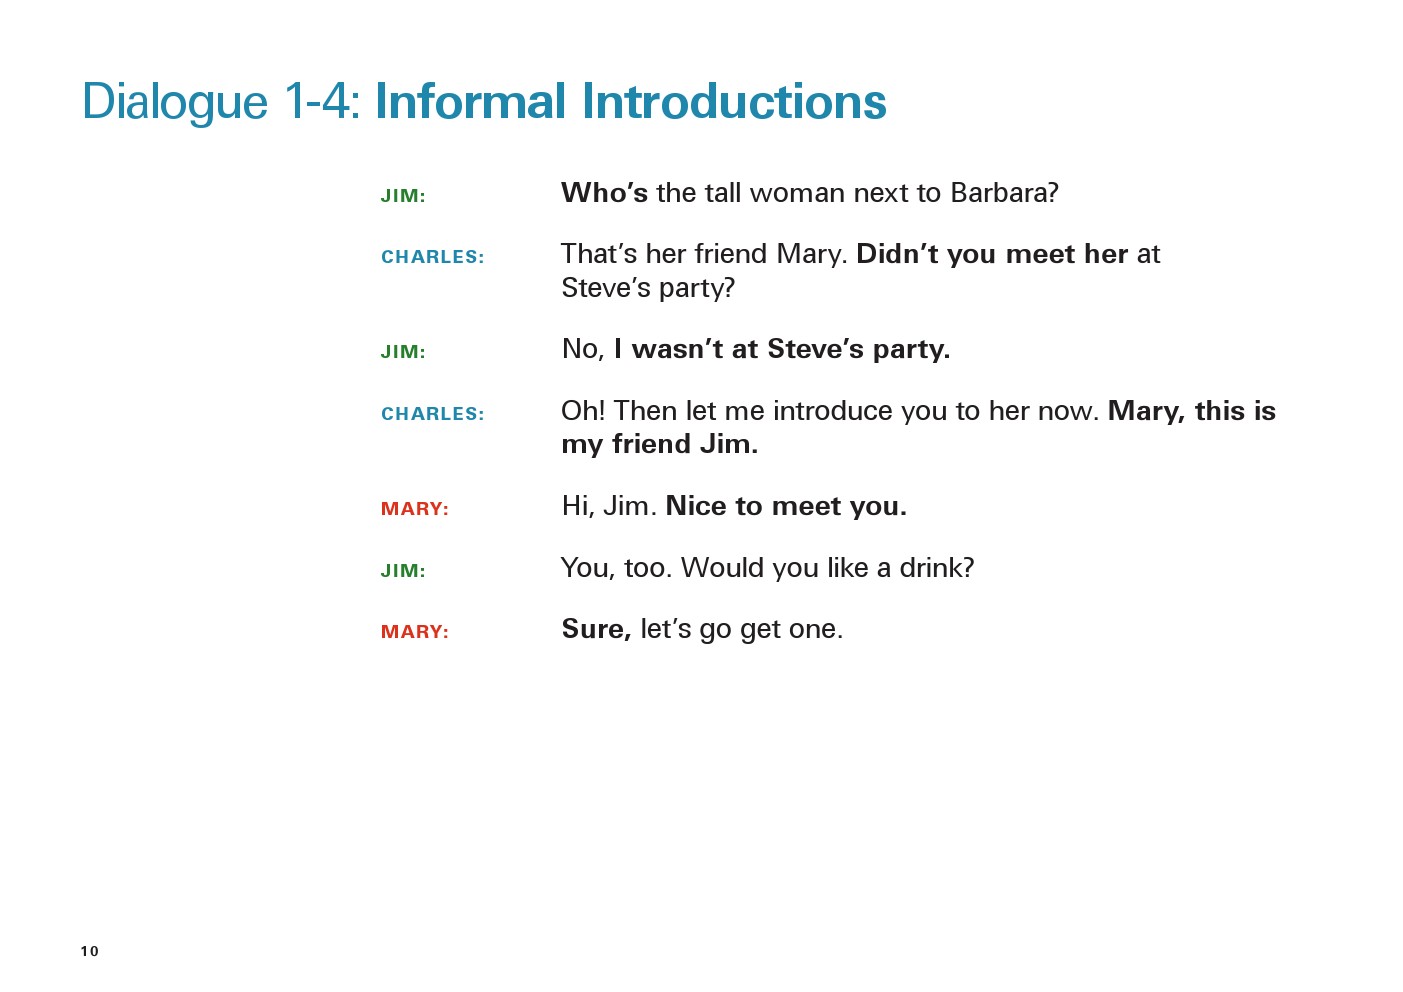 یادگیری انگلیسی آمریکایی-مکالمات و دیالوگ های روزمره- مکالمه 4-1: معرفی کردن به زبان غیر رسمی(Dialogue 1-4: Informal Introductions)